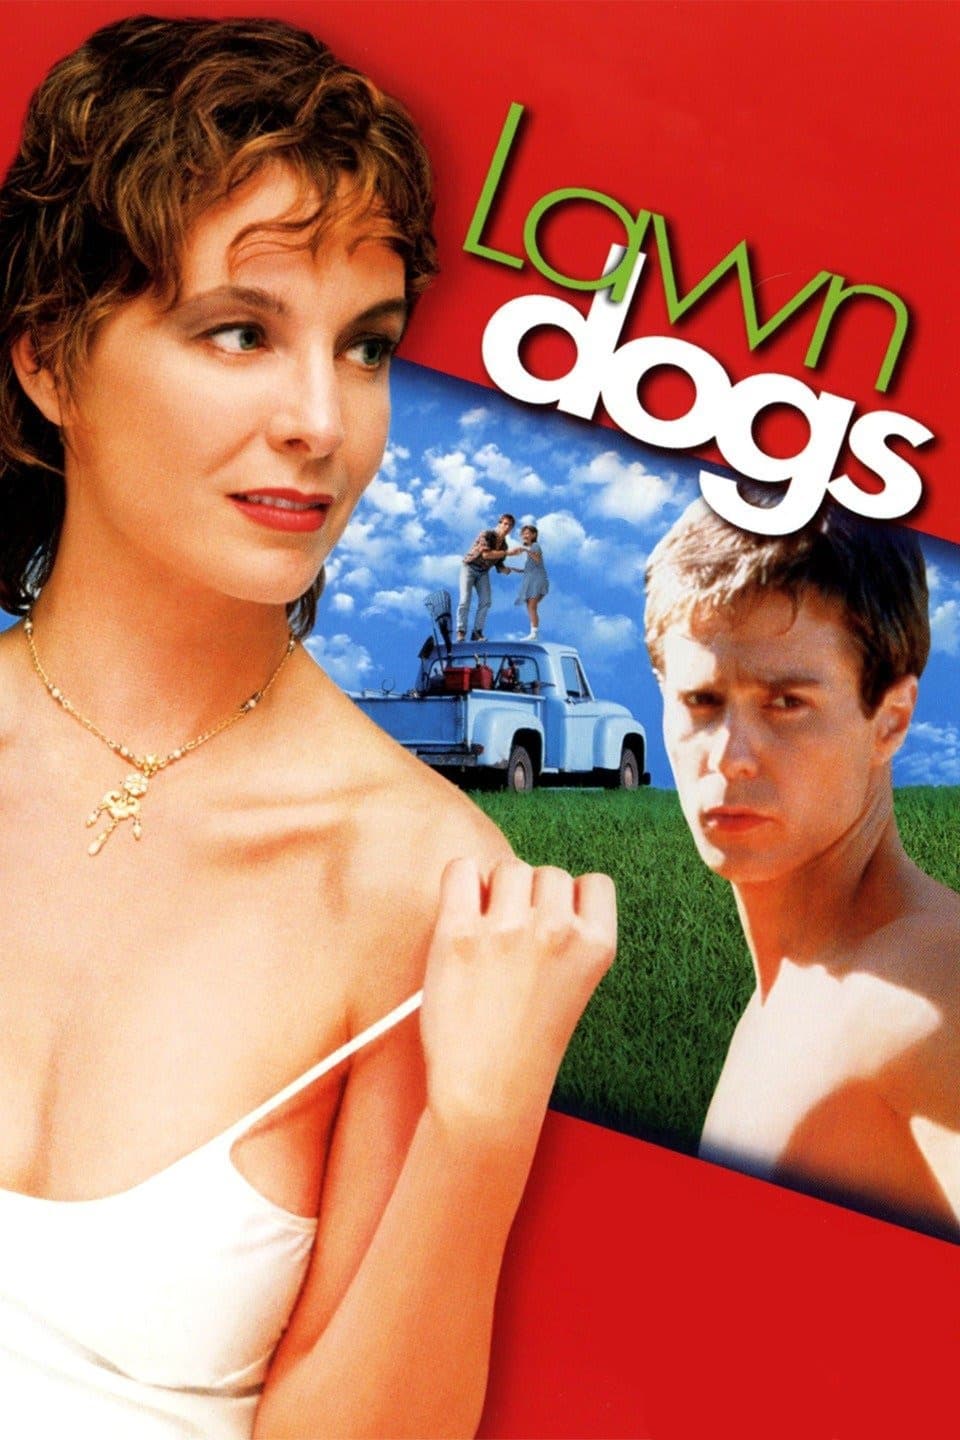 Inocencia rebelde (Lawn Dogs) (1997)